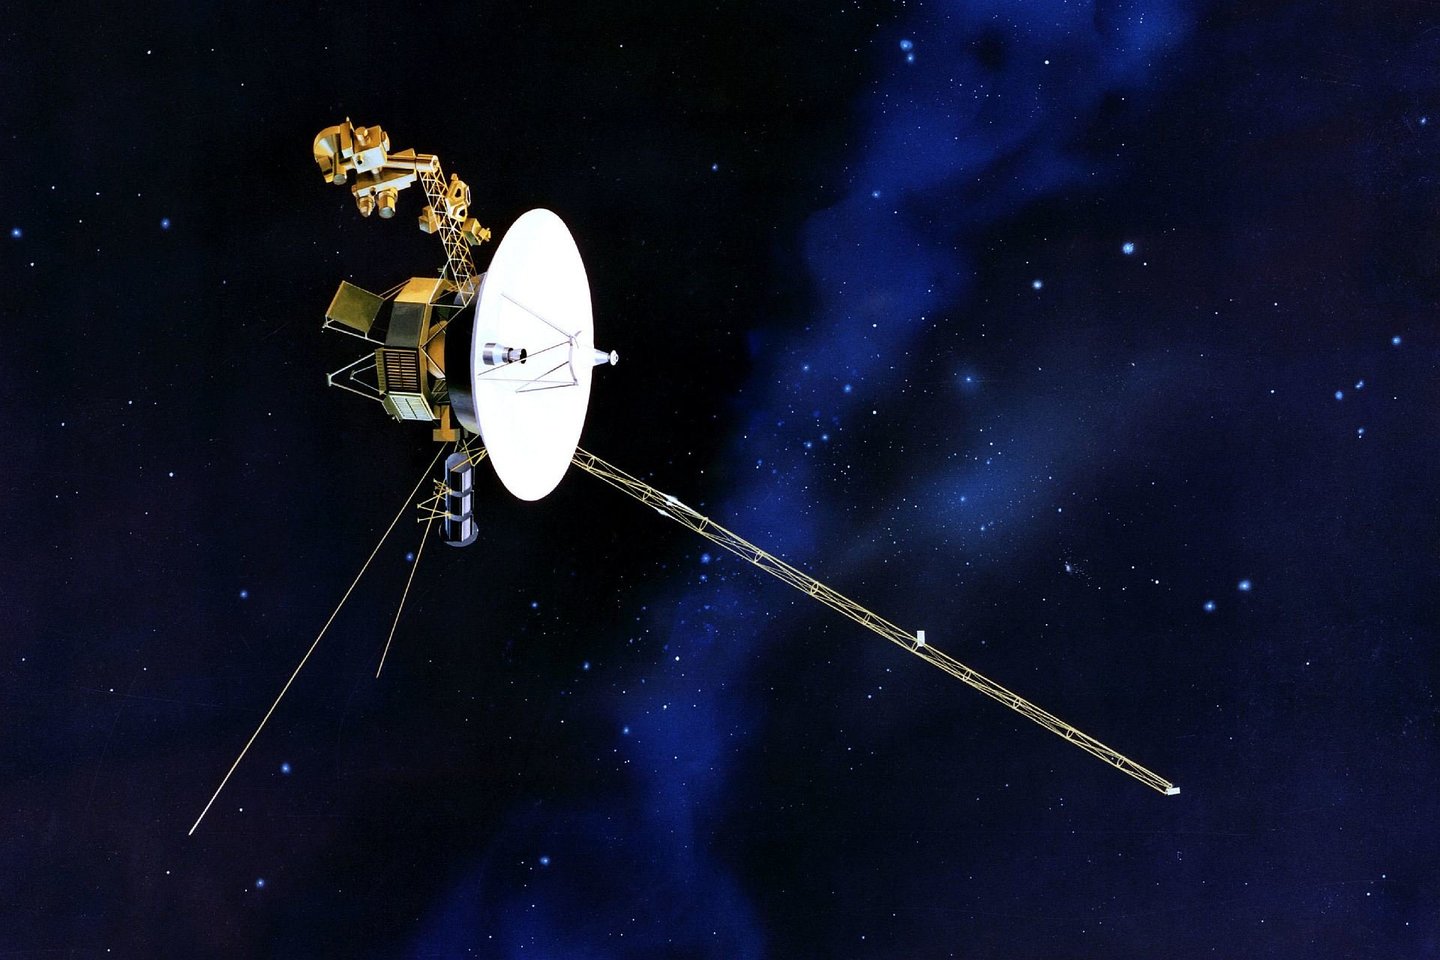  2014 m. inžinieriai pastebėjo, kad pagrindiniai „Voyager 1” varikliai ėmė silpti ir ilgainiui jiems teko išleisti daugiau impulsų, kad pasiektų tą patį rezultatą. <br> NASA iliustr.